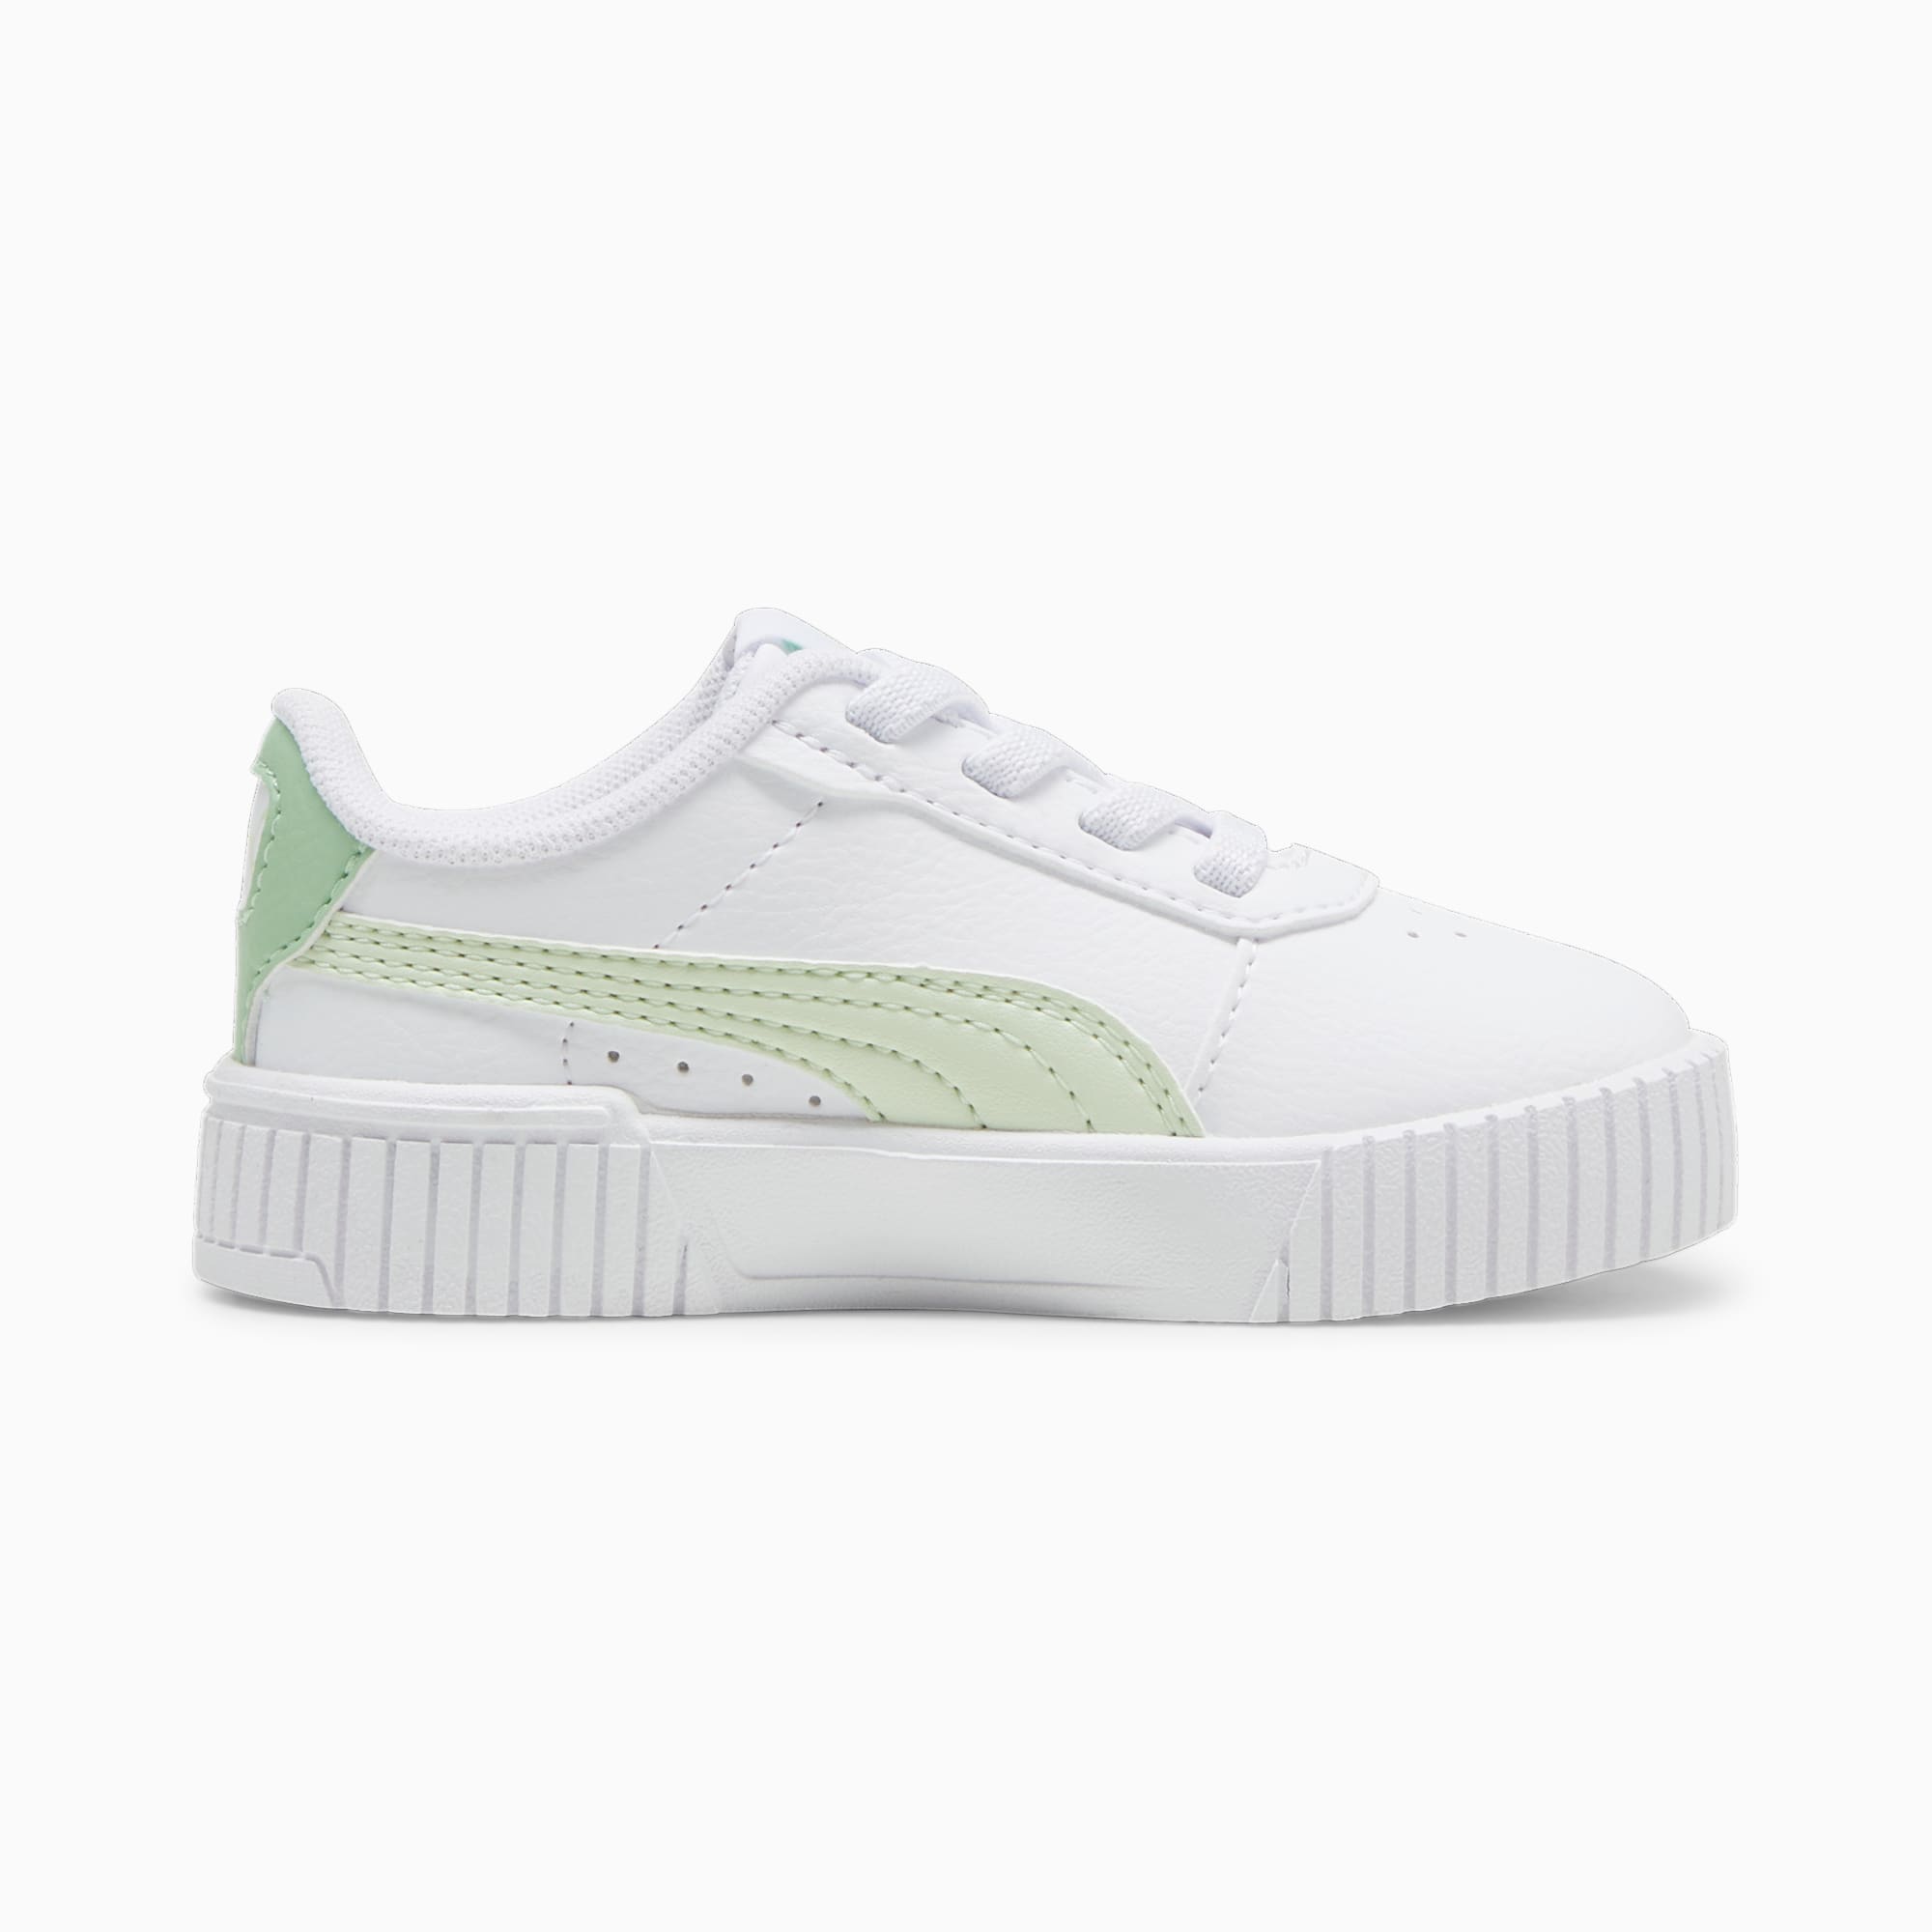 PUMA Niemowlęce Sneakersy Carina 2,0 AC, Biały / Zielony